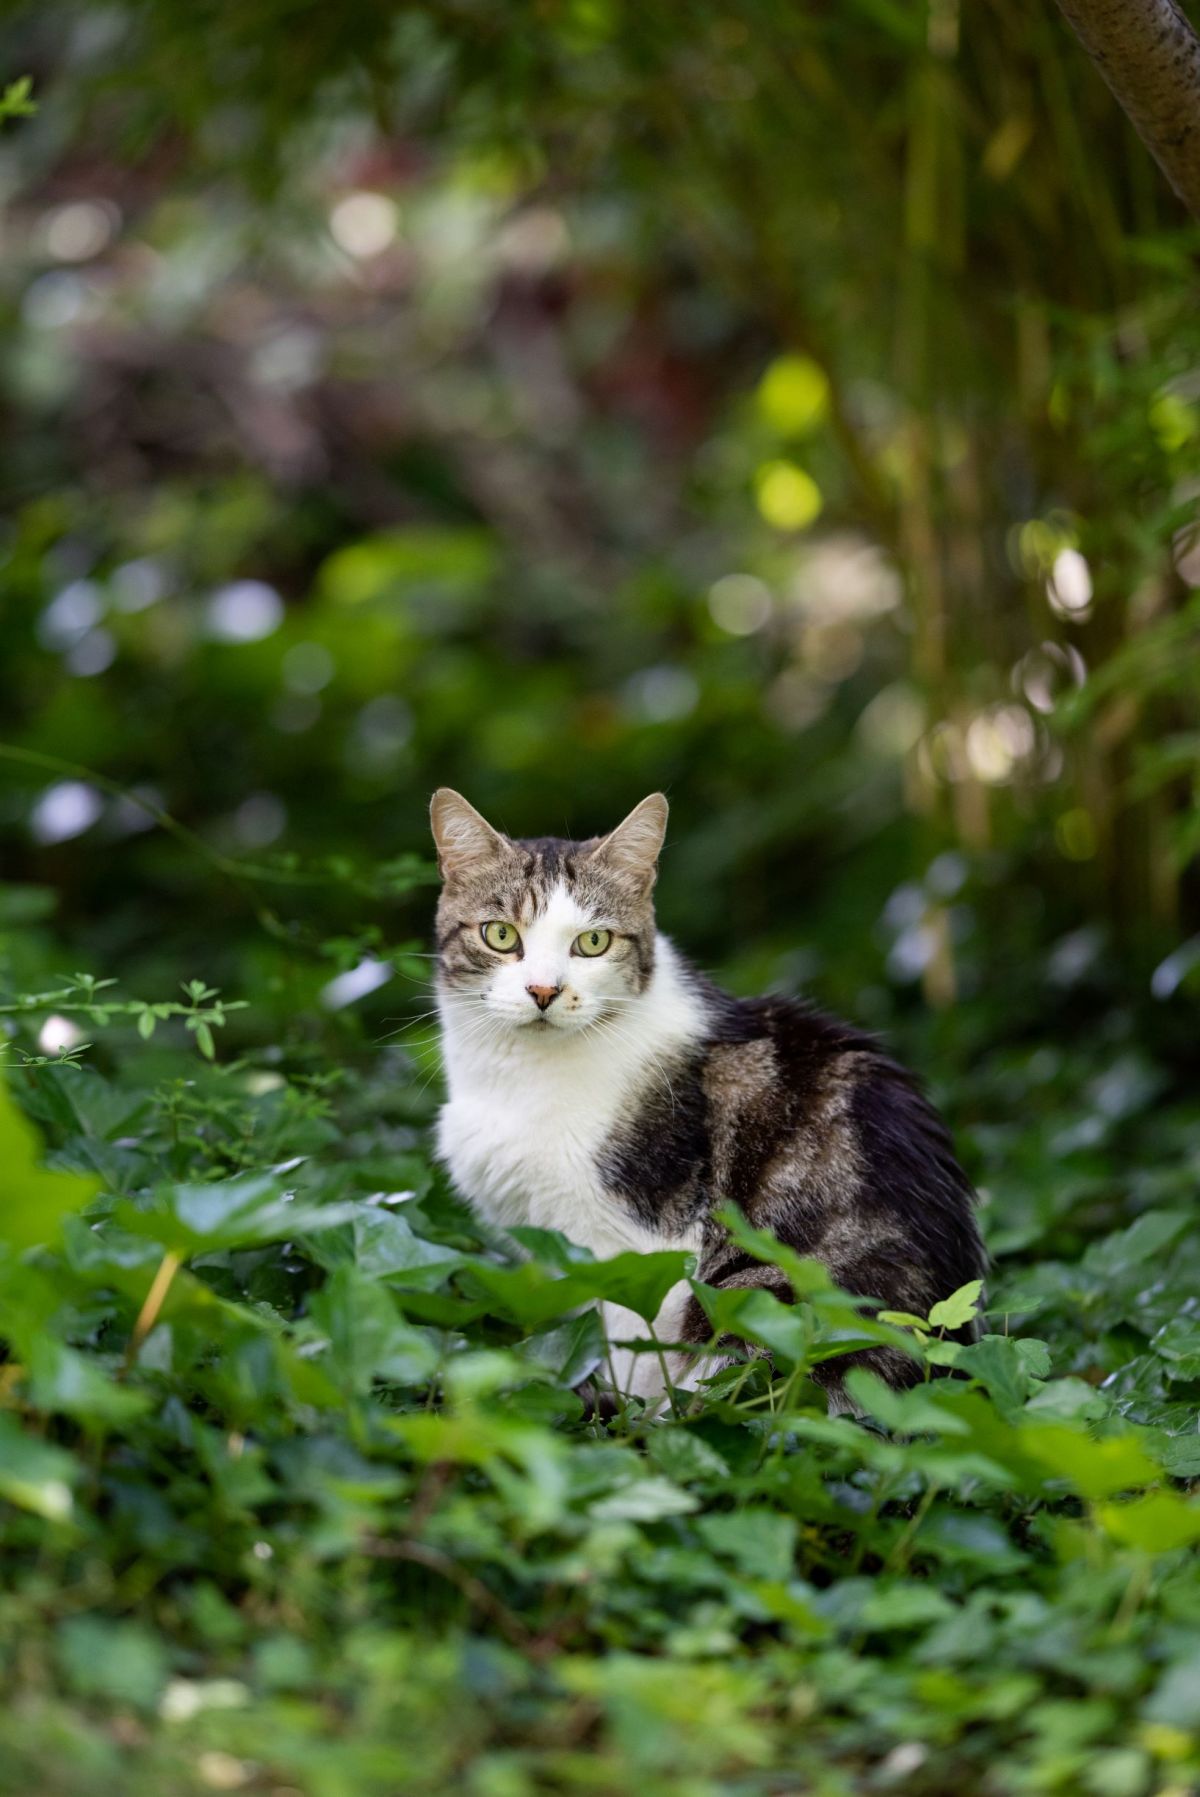 A cat in a garden